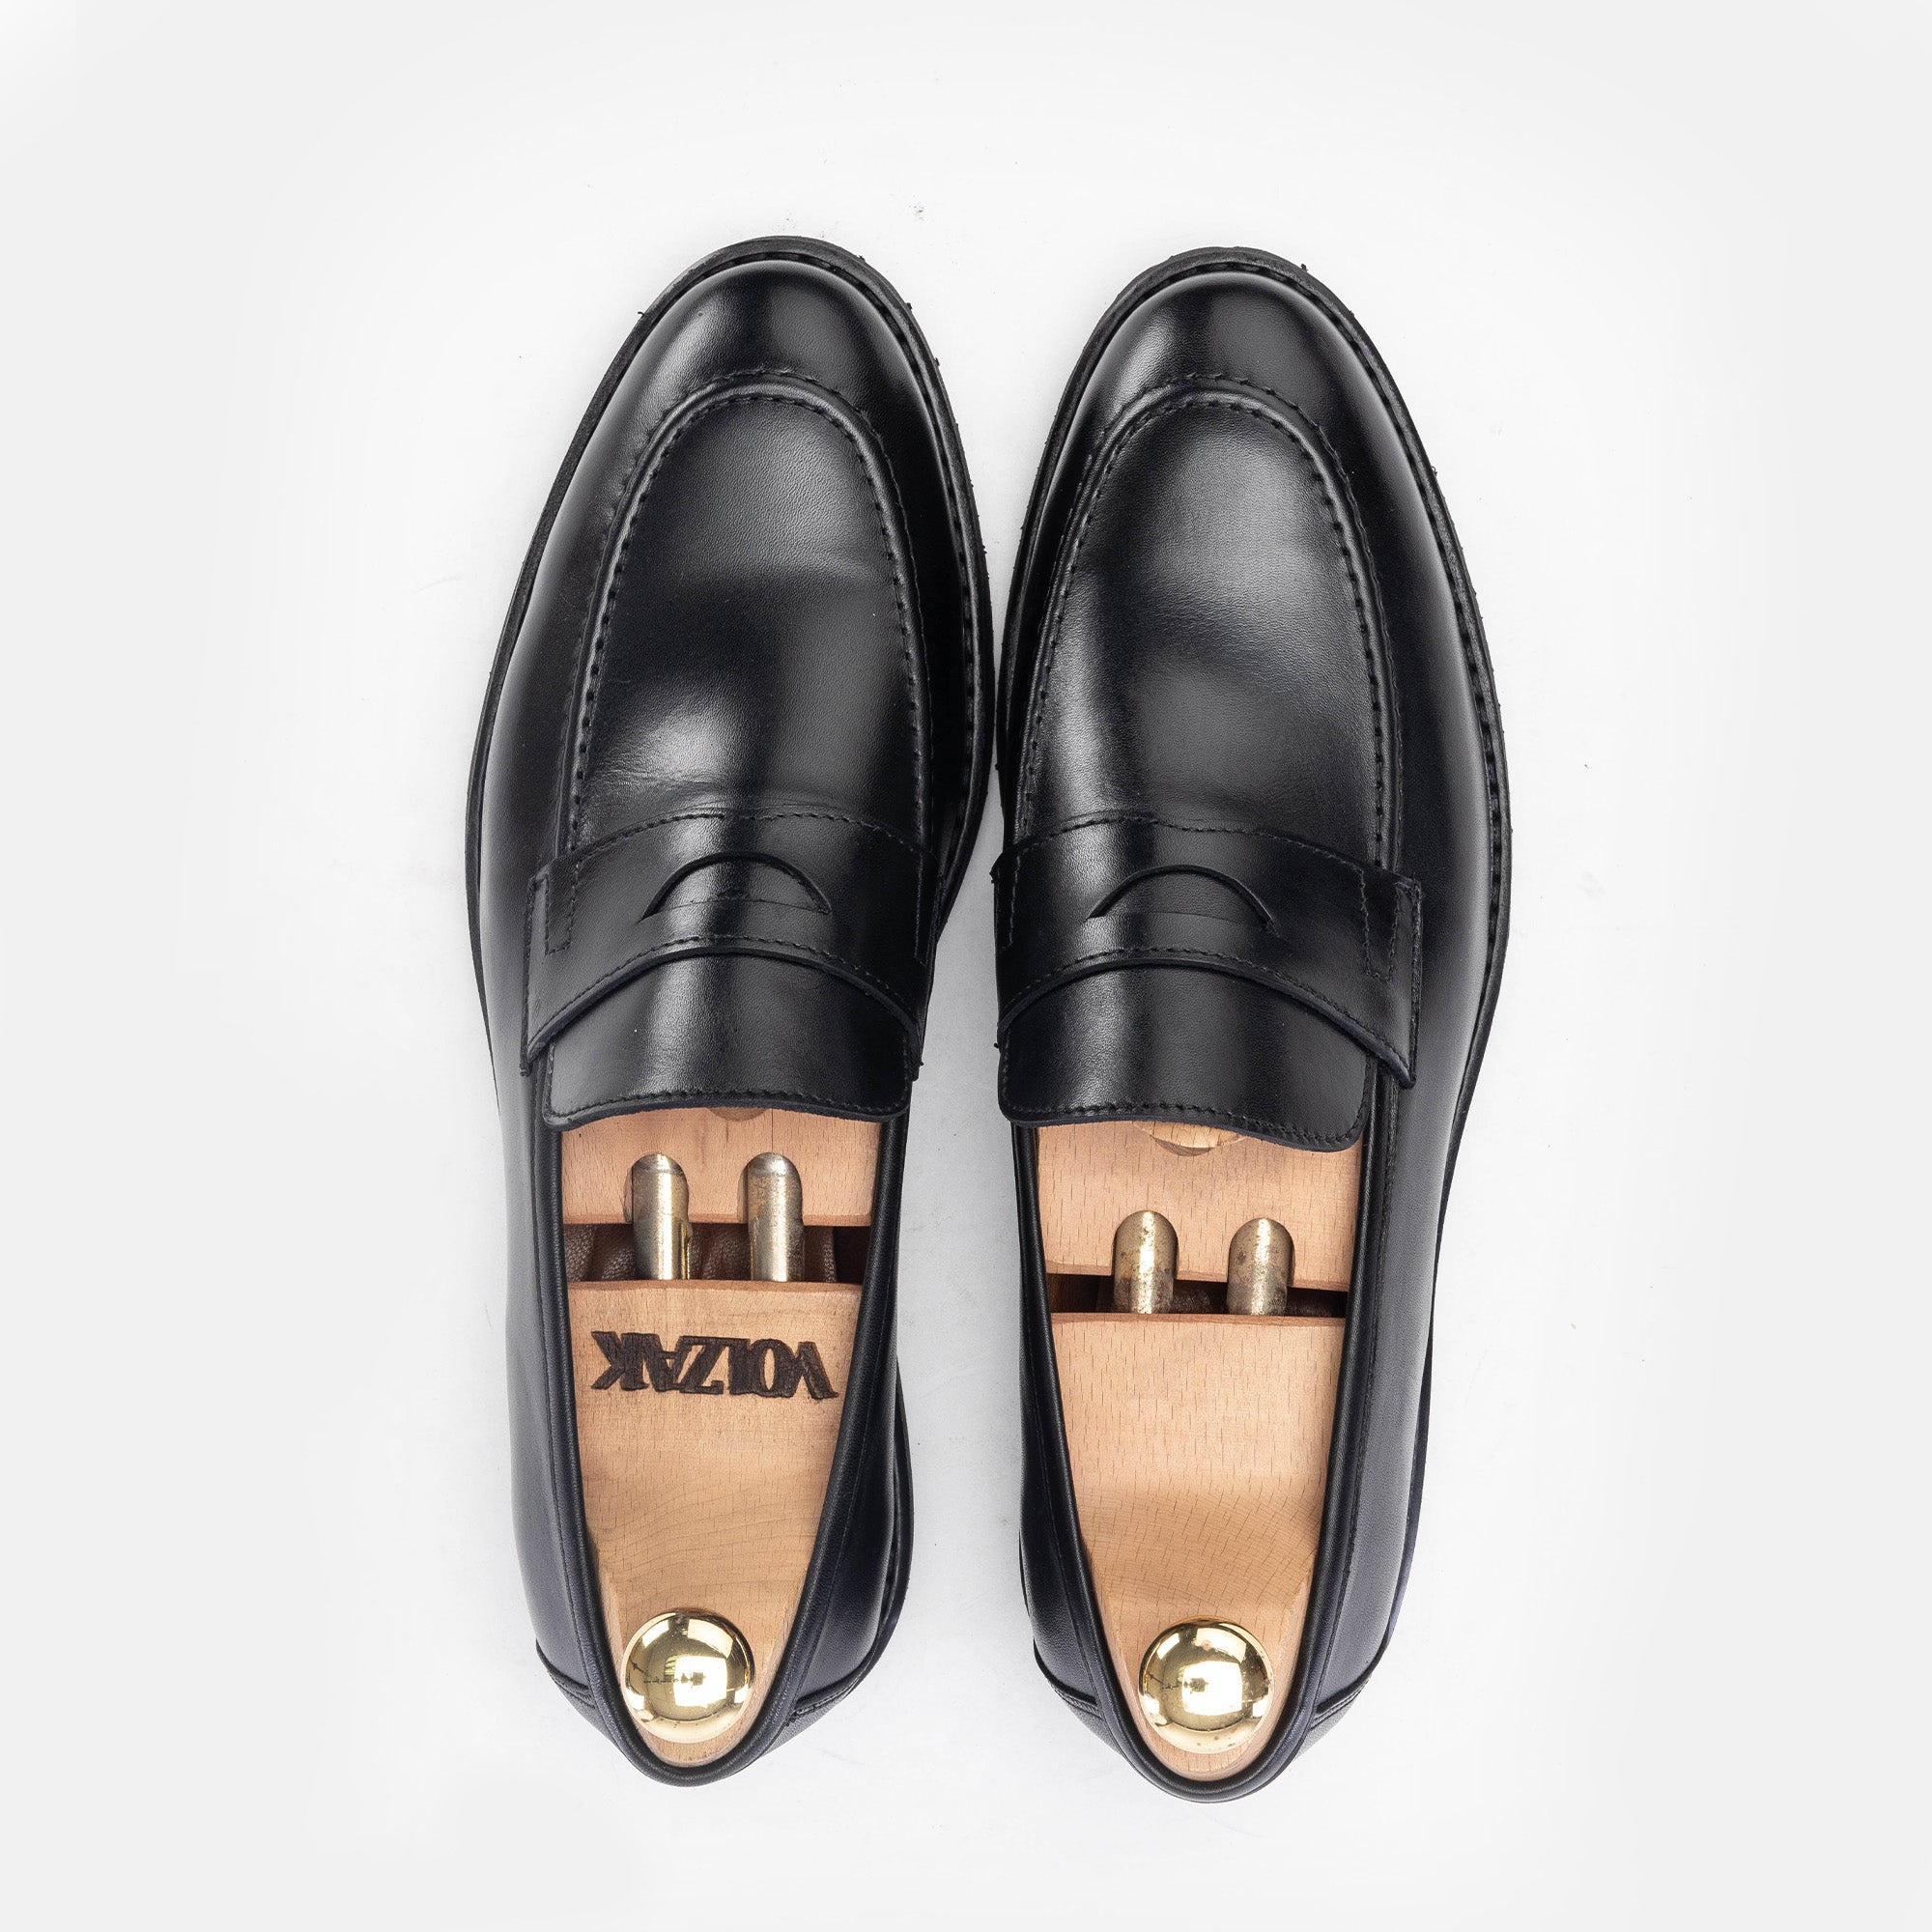 '5158 chaussure cuir noir